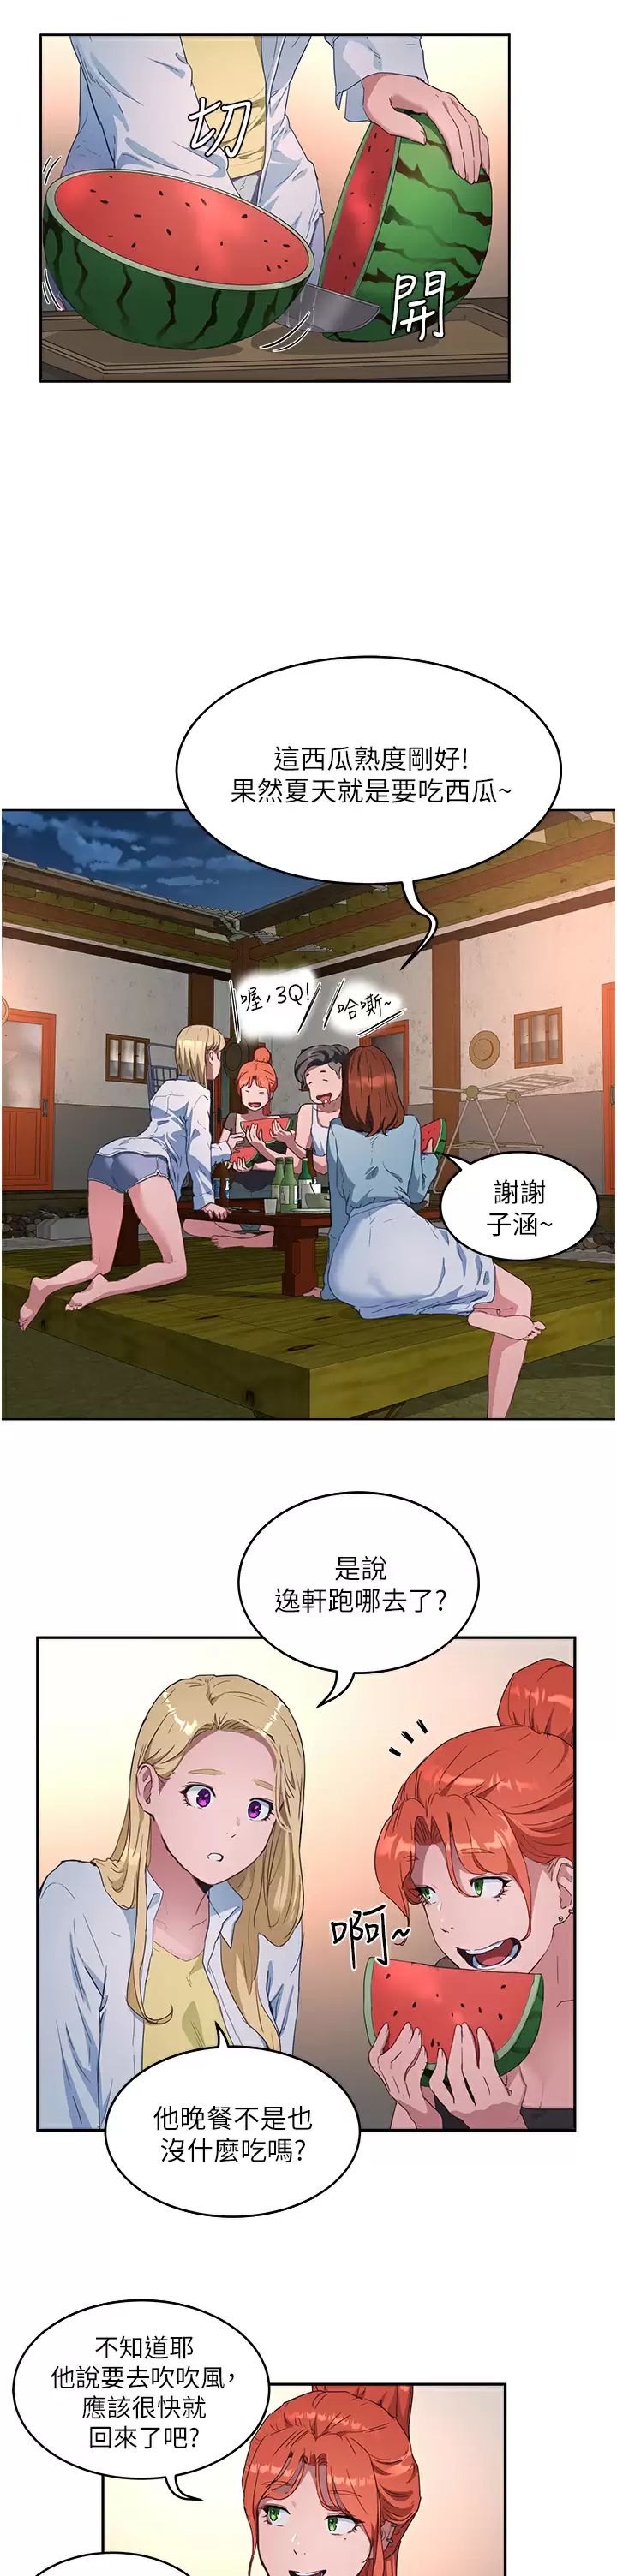 韩国污漫画 夏日深處 第32话 滚烫多汁的鲍鱼 2